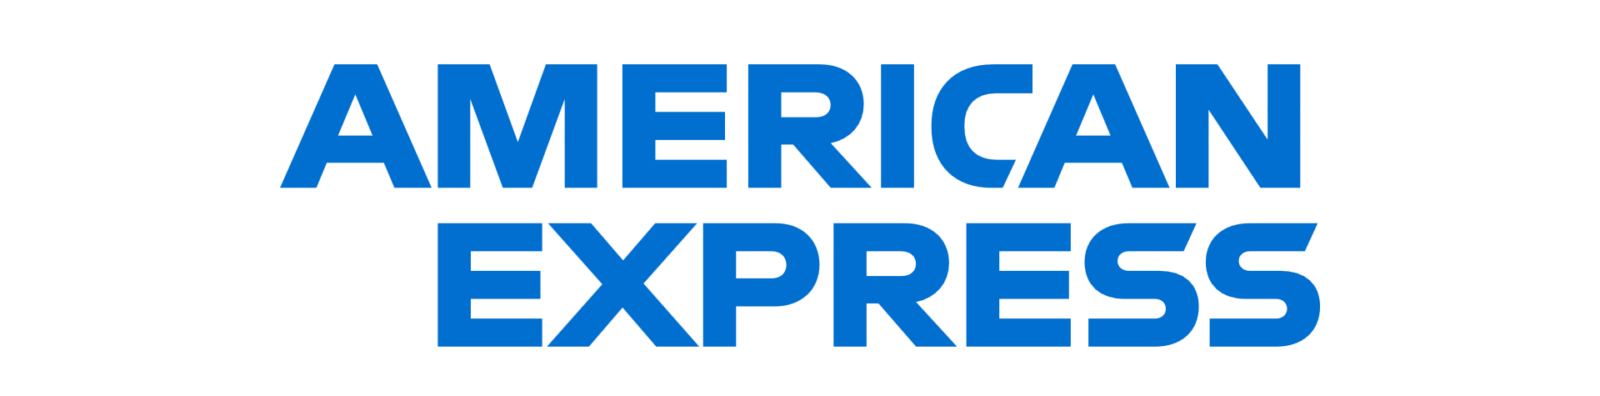 American-Express logo